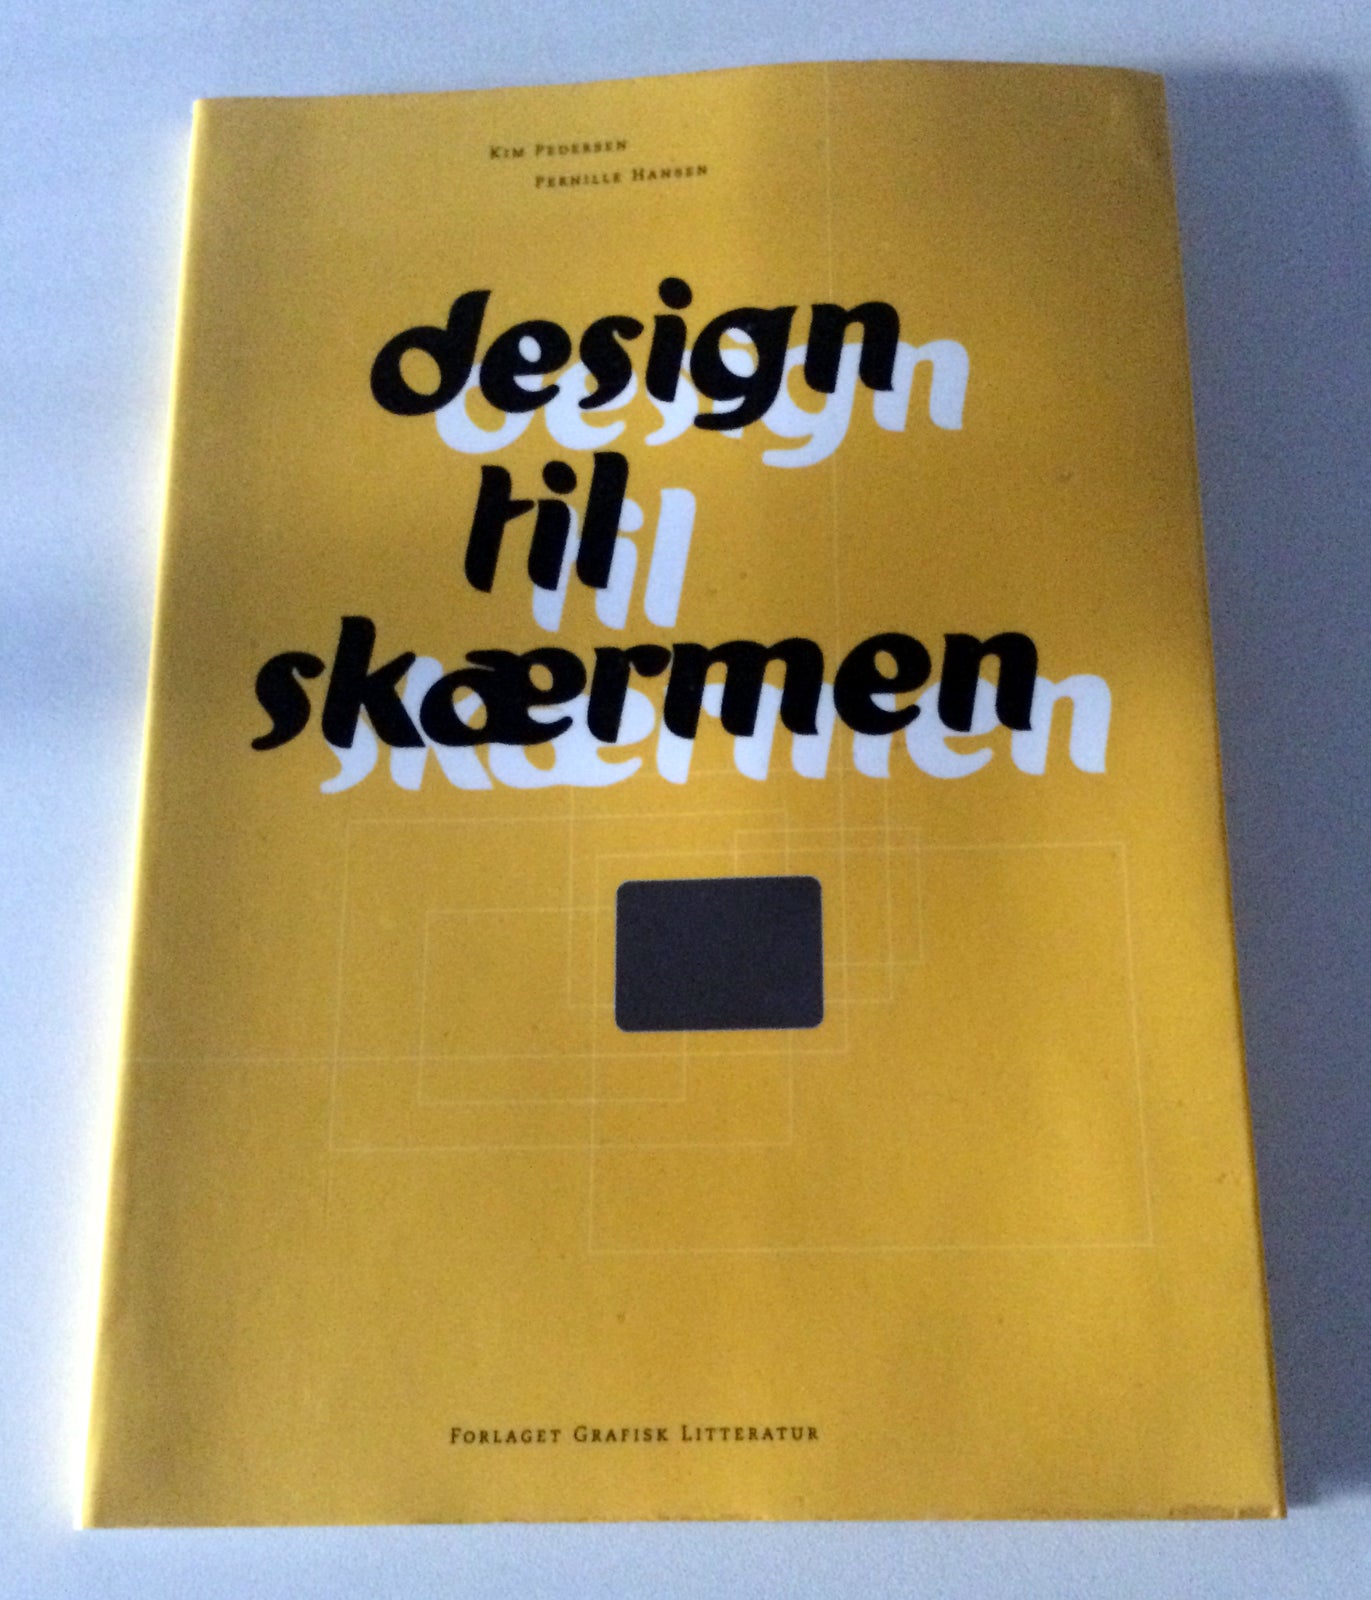 Design til skærmen, Kim Pedersen og Pernille Hansen